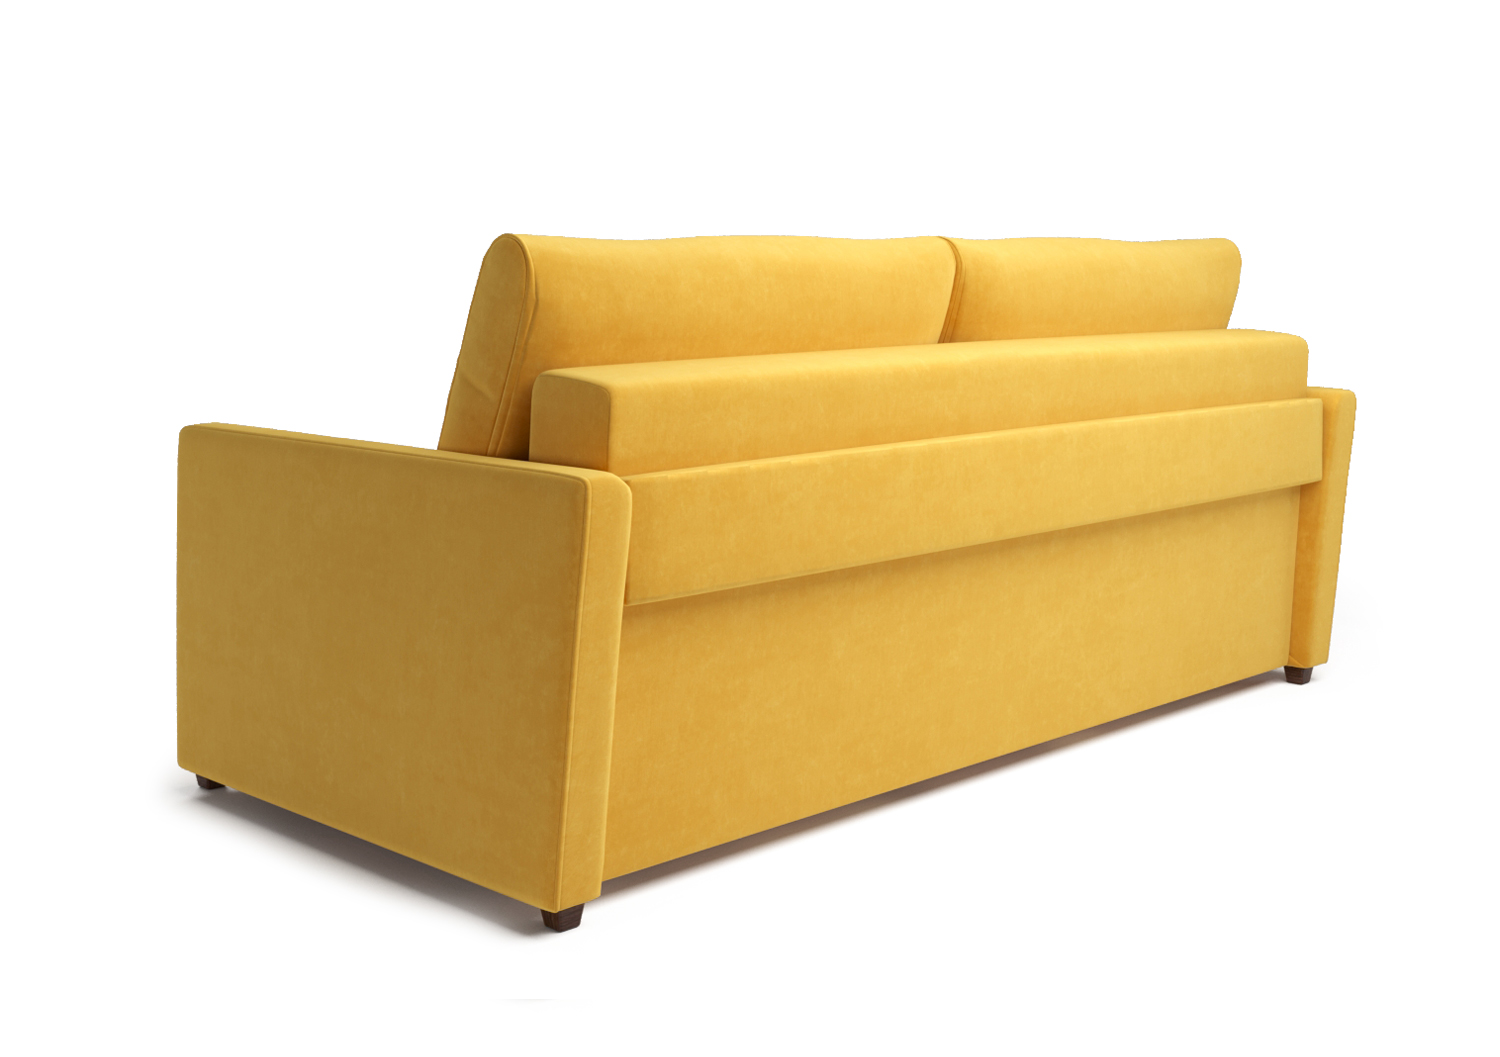 Адель, прямой диван, Miss 83 ткань Шенилл цвет Желтый механизм трансформации Еврокнижка изображение 4